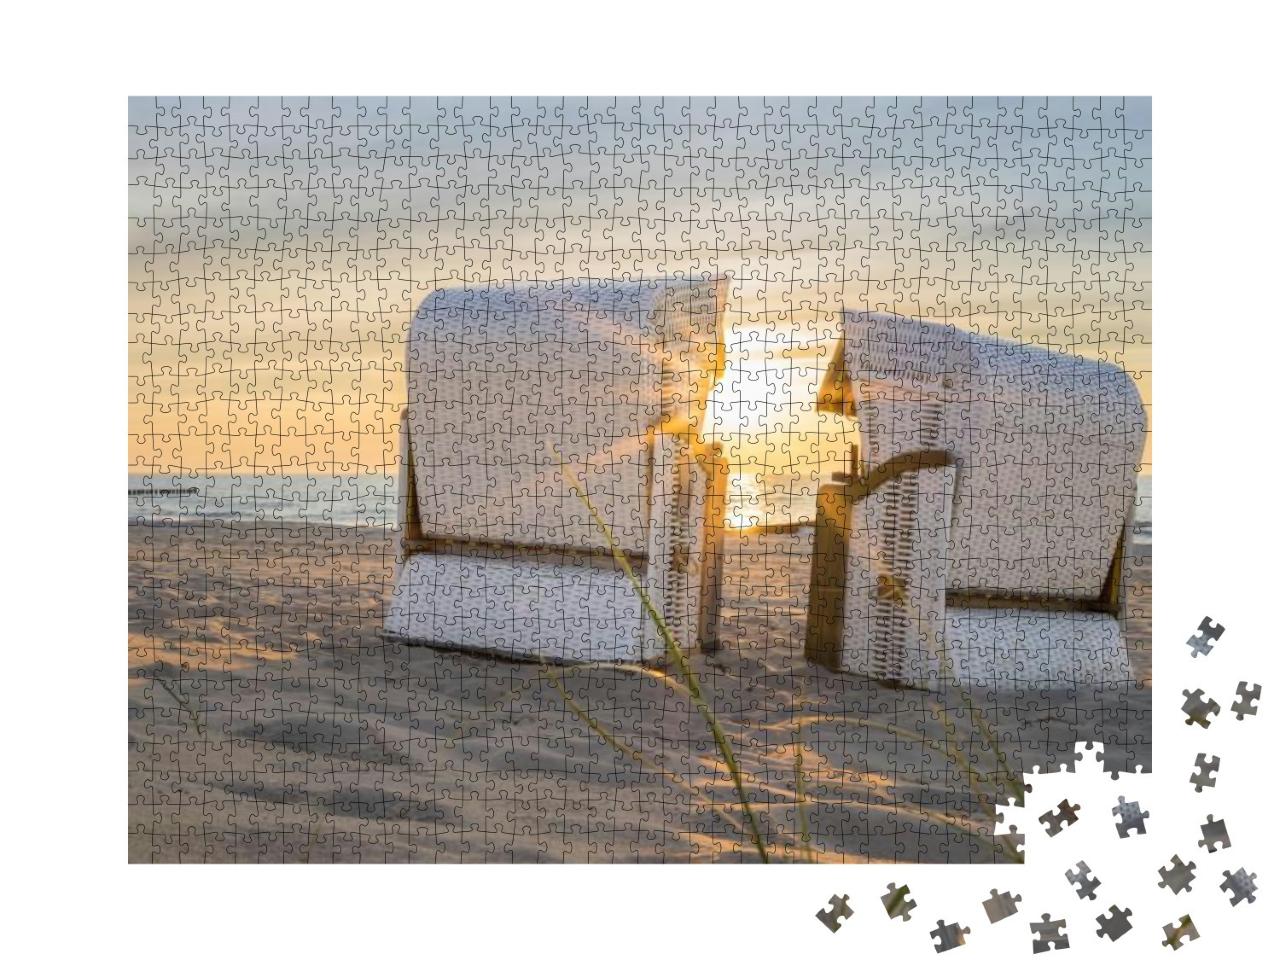 Puzzle 1000 Teile „Sonnenuntergang an der Ostsee, zwei Strandkörbe“